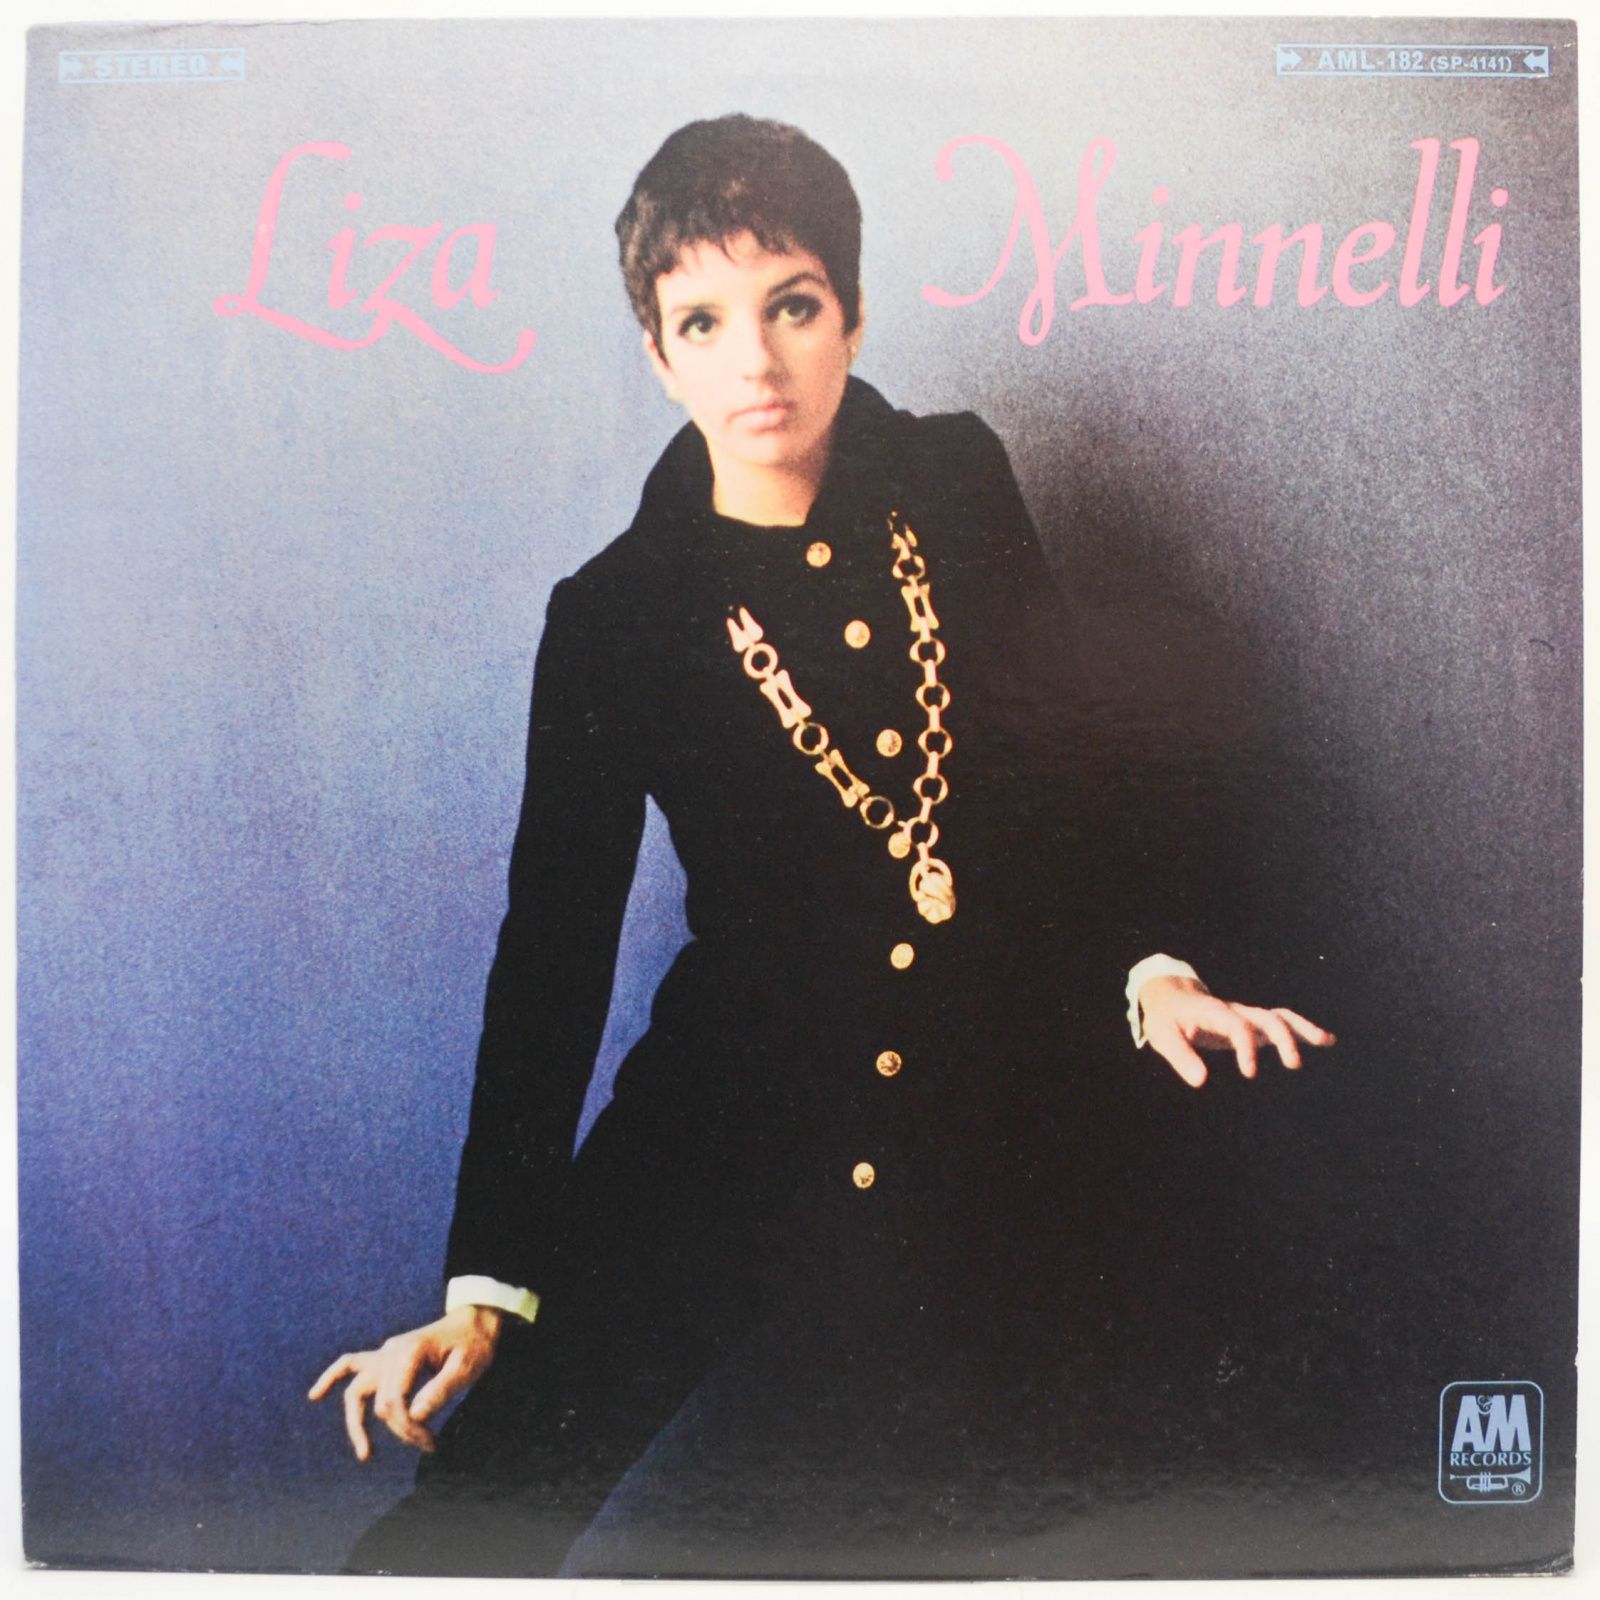 Liza Minnelli — Liza Minnelli, 1968